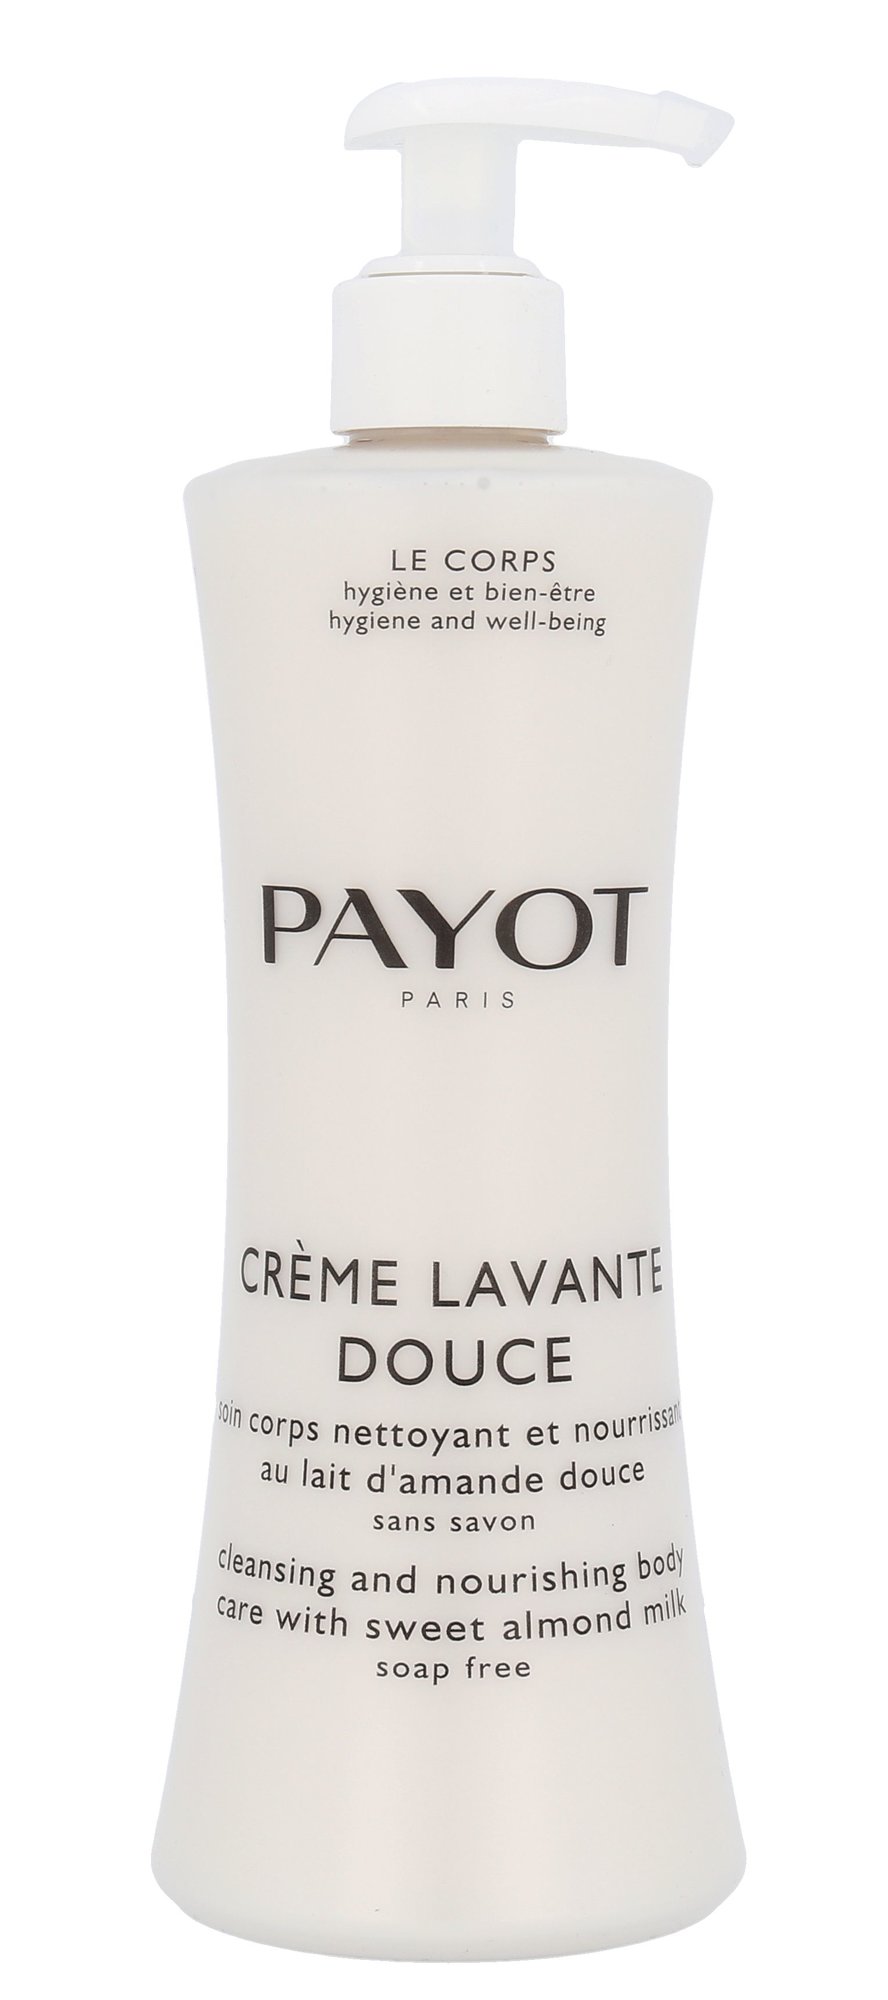 Payot Creme Lavante Douce